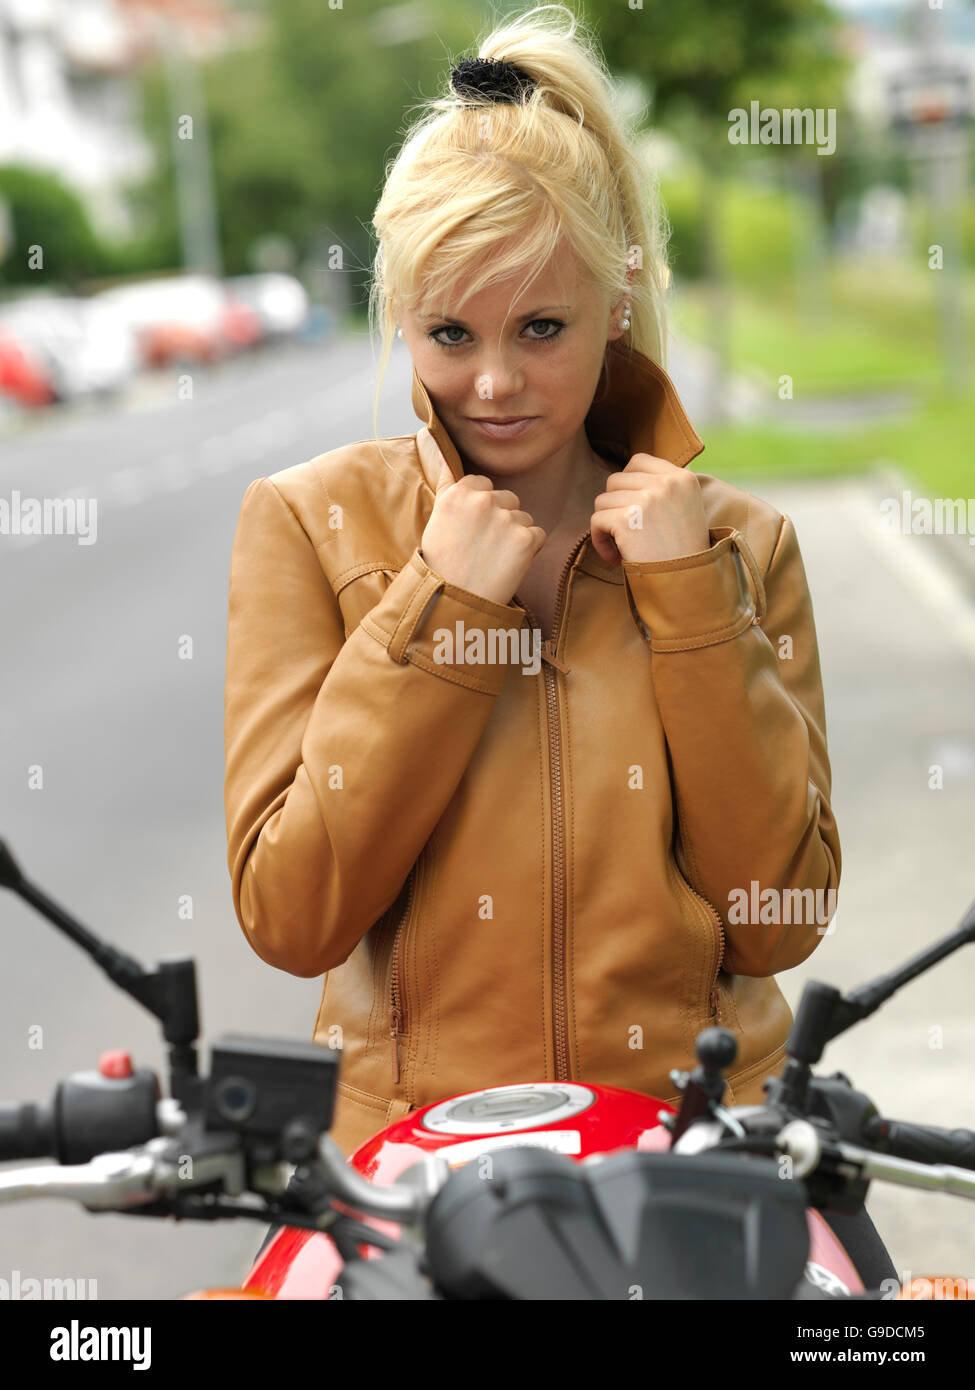 Jeune femme sur une moto Banque D'Images